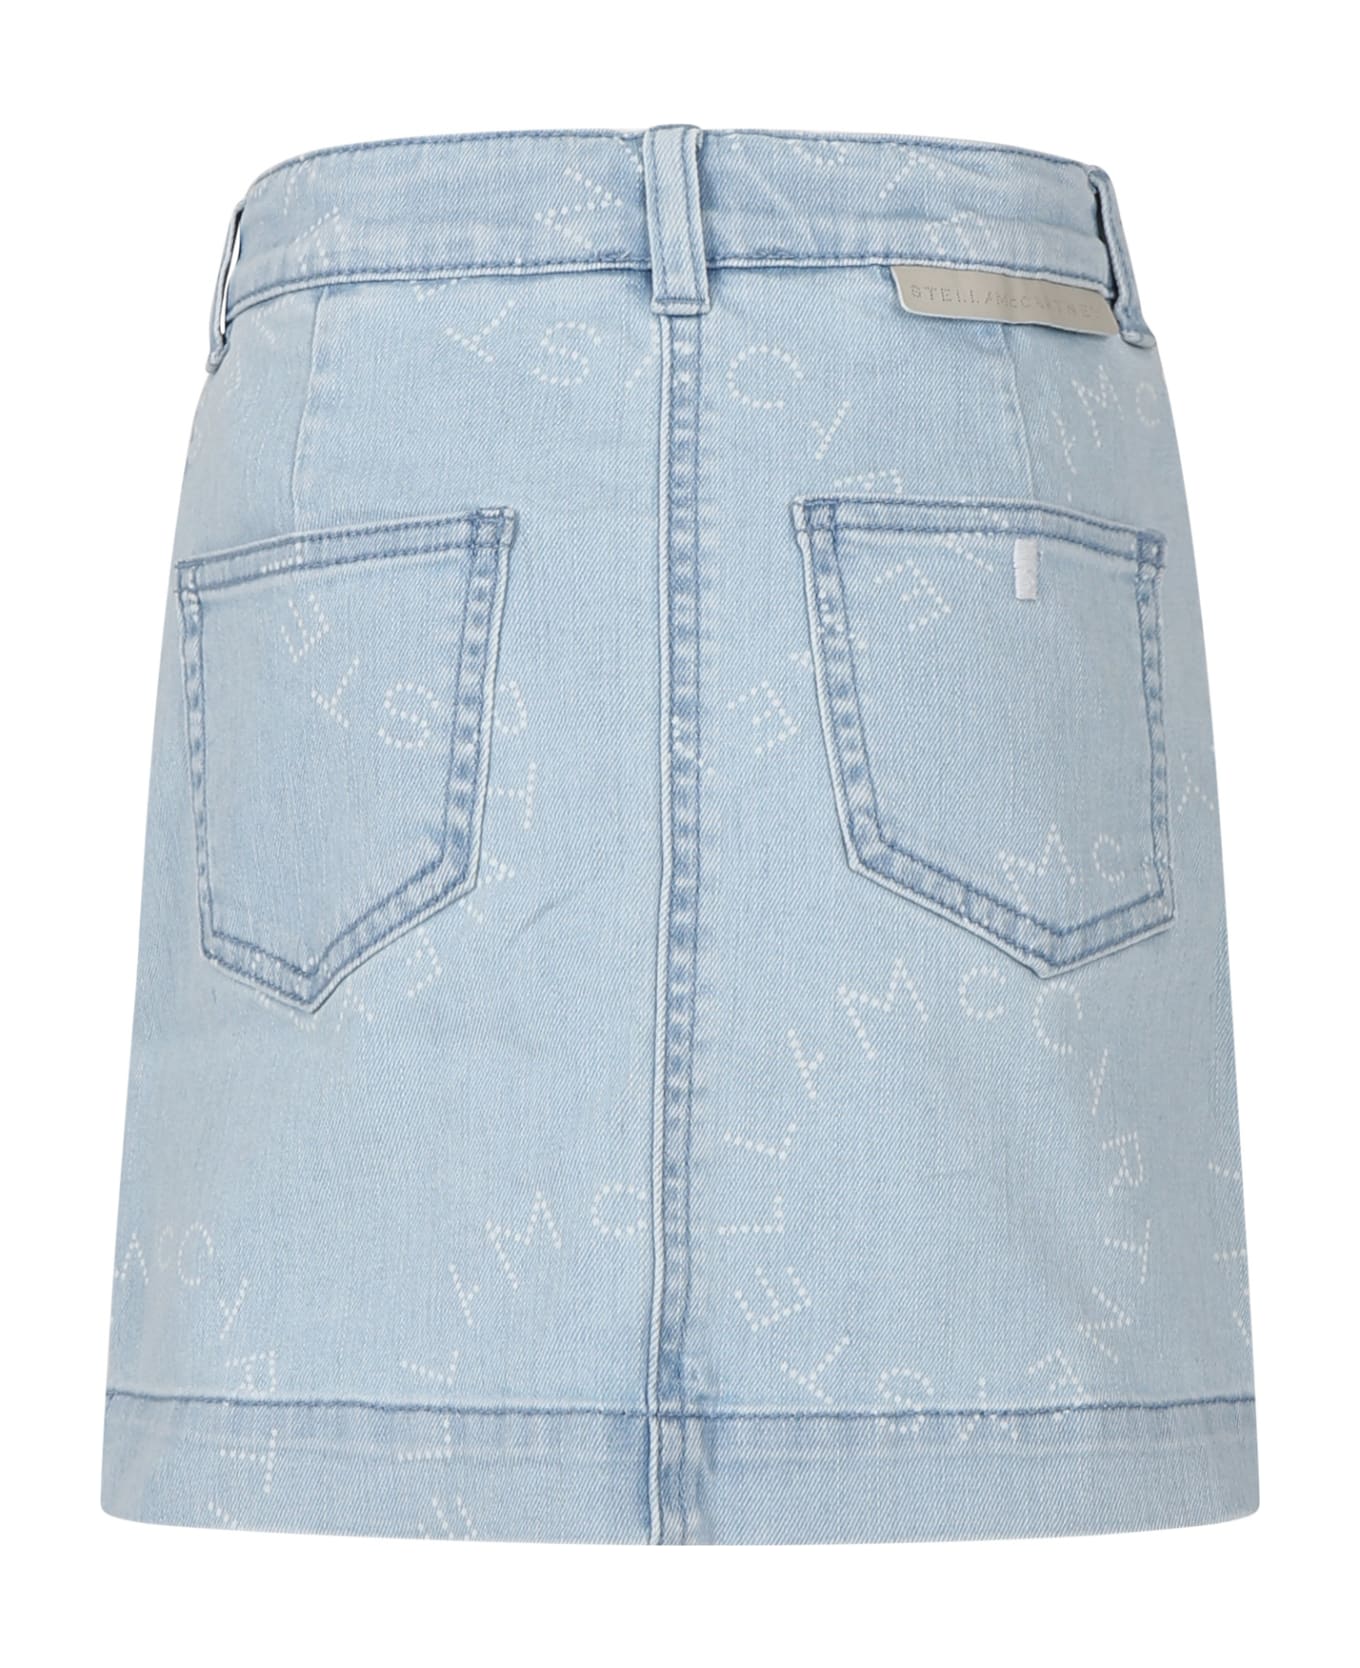 Stella McCartney Denim Skirt For Girl With Logo - BLUE ボトムス